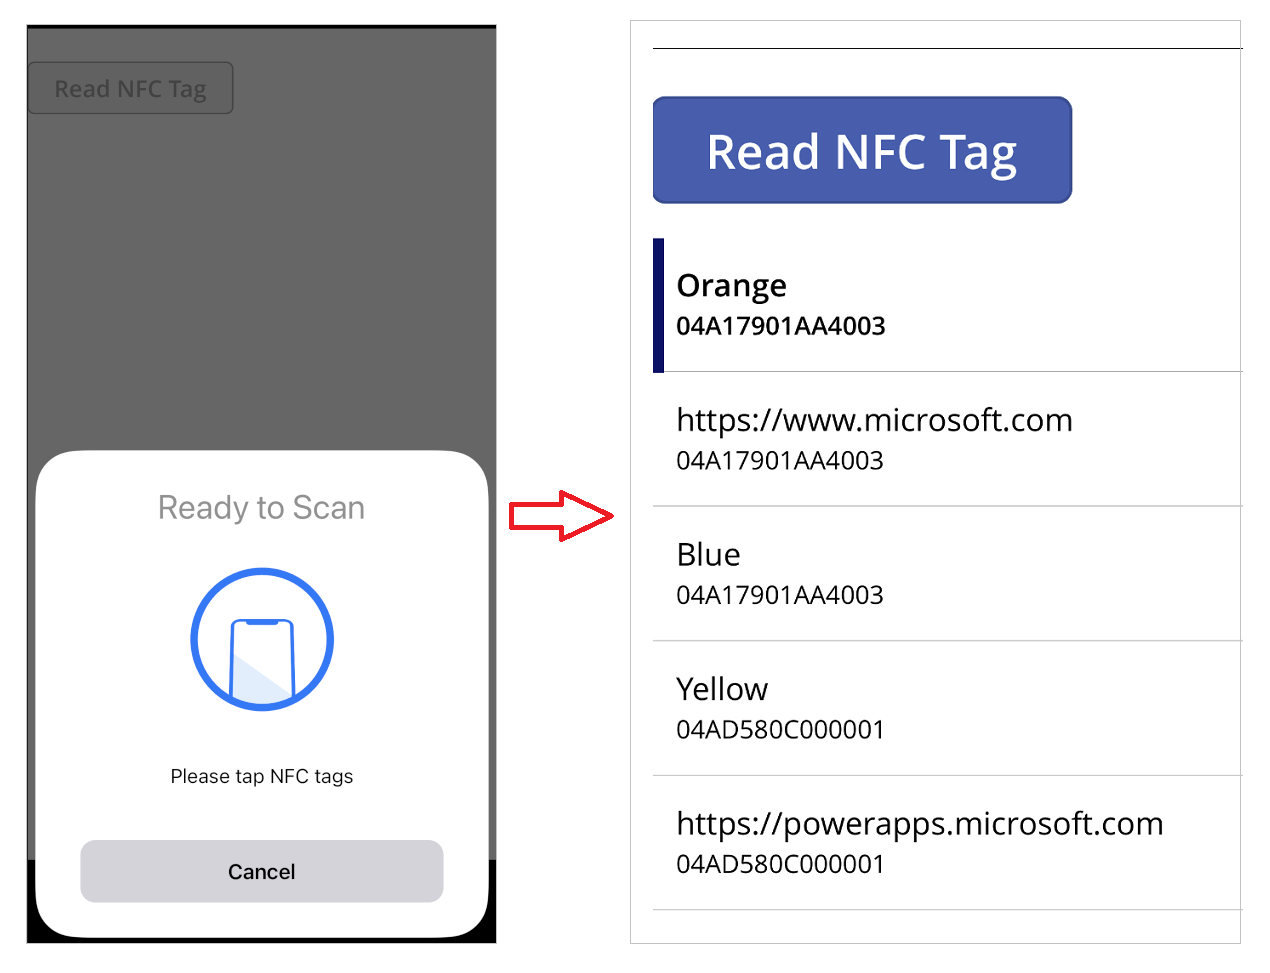 تطبيق على الجهاز المحمول مع مثال قراءة علامة NFC والنتيجة داخل المعرض.